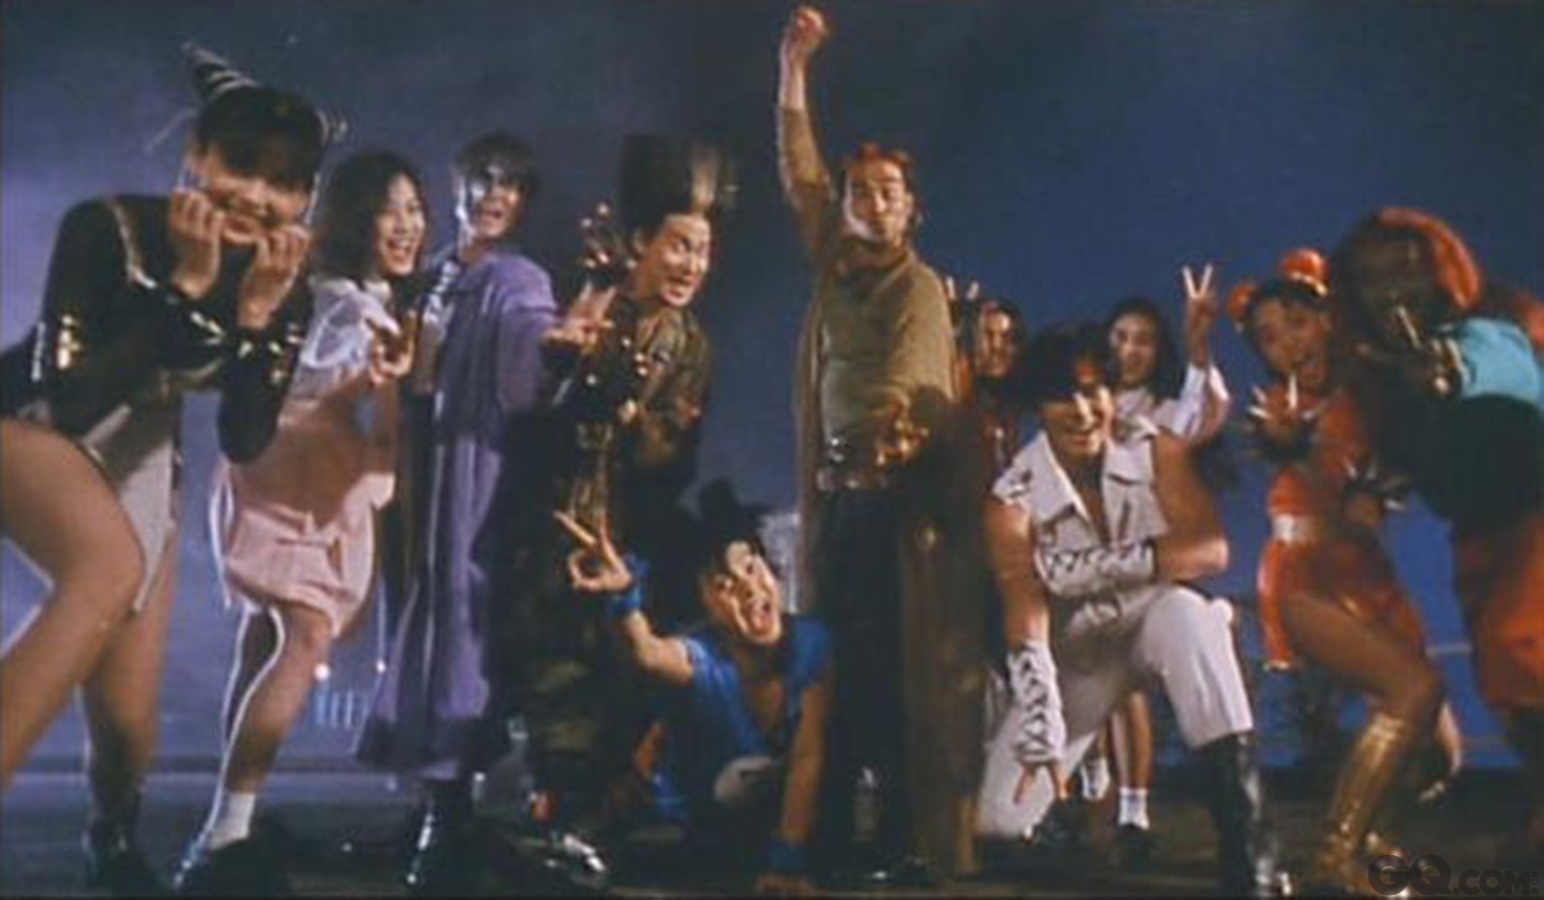 1993年由王晶编导的《超级学校霸王》是香港电影史上相当重要的“全明星电影”，除了为了赈灾而拍的《豪门夜宴》外，就数本片最让观众印象深 刻，阵容一字排开相当惊人：四大天王之三的刘德华、张学友、郭富城，女神邱淑贞，张卫健、任达华、郑伊健、杨采妮、许志安、成家班的卢惠光与拳王周比利，片中许多台词至今依旧影响着网络文化。